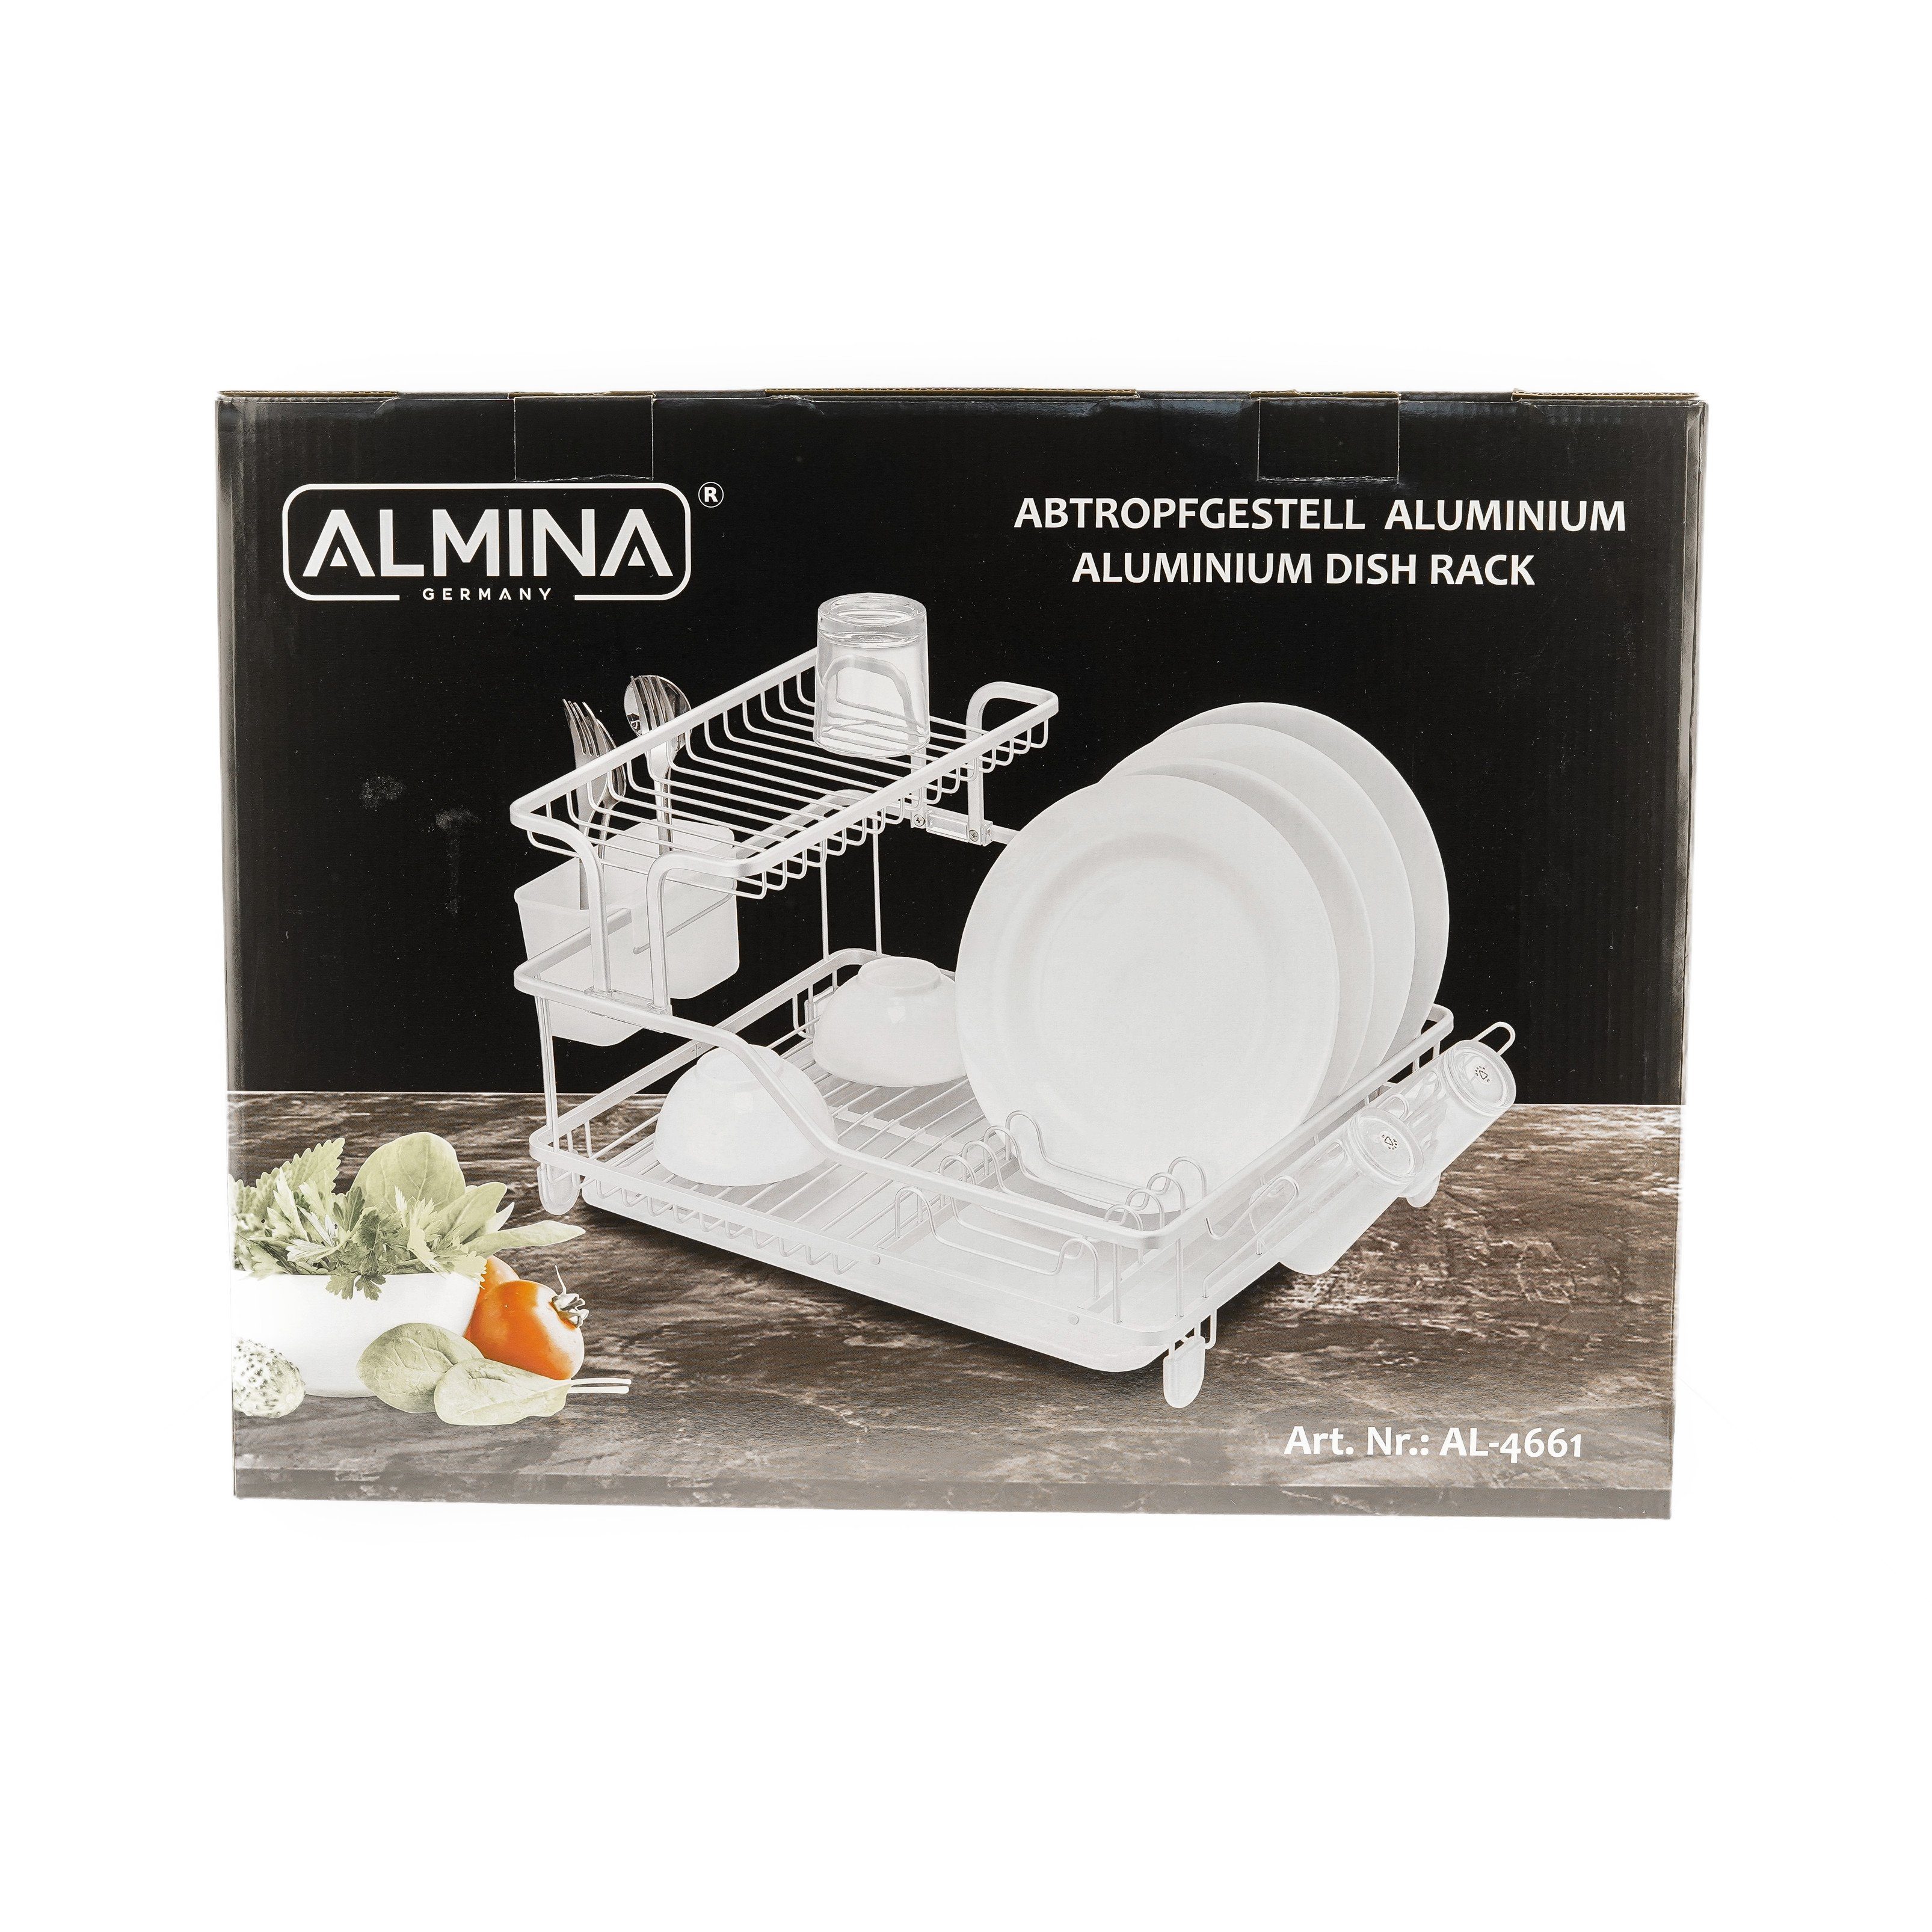 Geschirrständer Almina Geschirrständer und Ihr für Silber Geschirr platzsparend praktisch